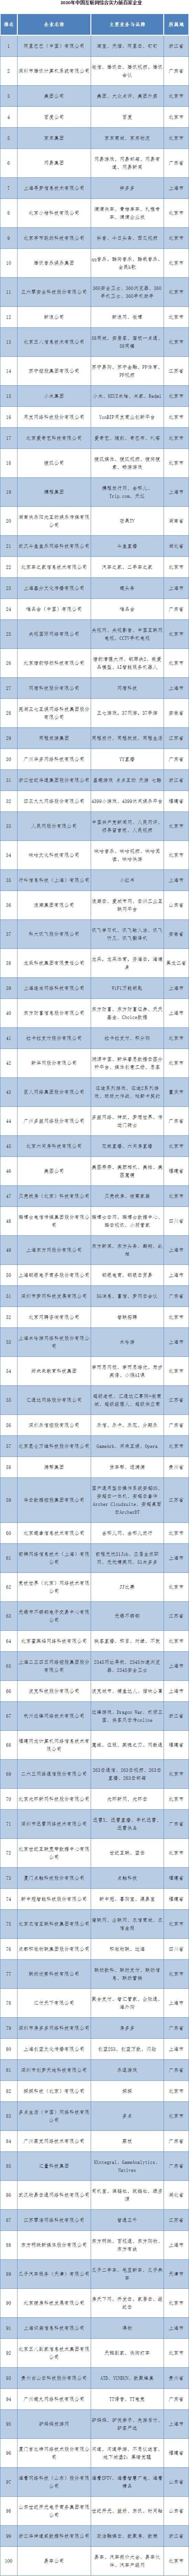 互联网协会公布中国互联网百强名单：阿里、腾讯、美团分列前三